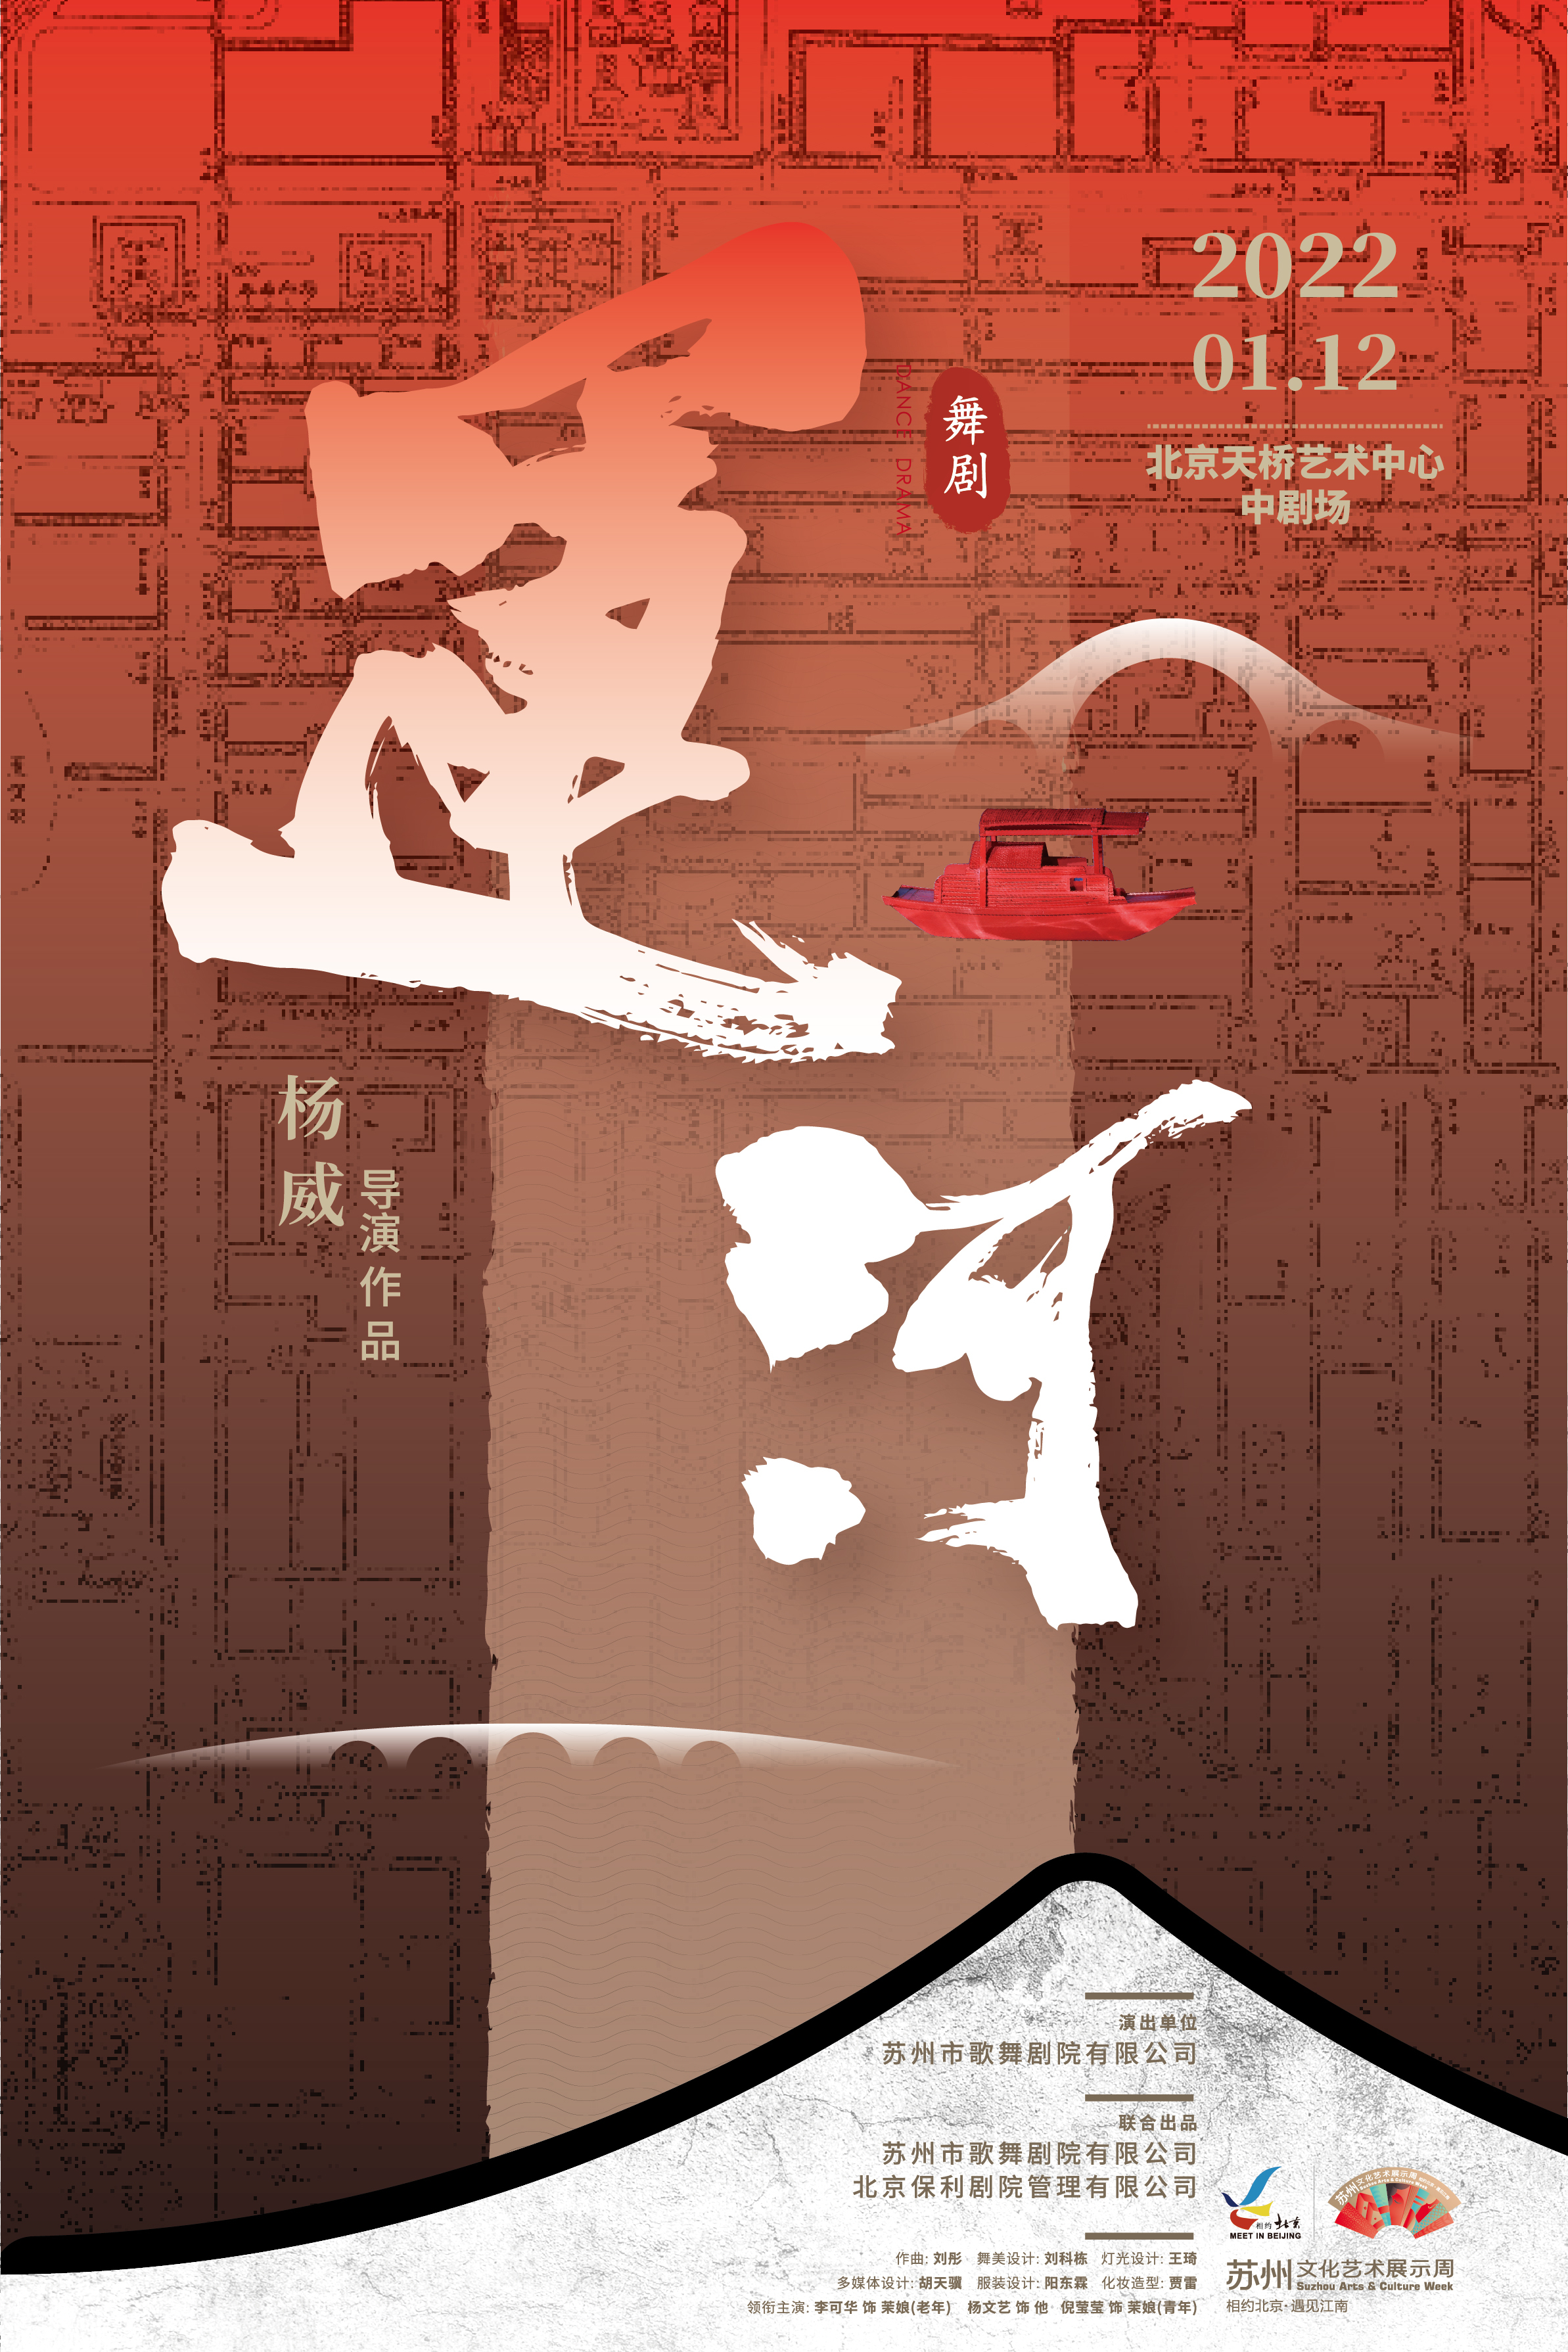 舞剧《运·河》献演“相约北京·遇见江南”苏州文化艺术展示周